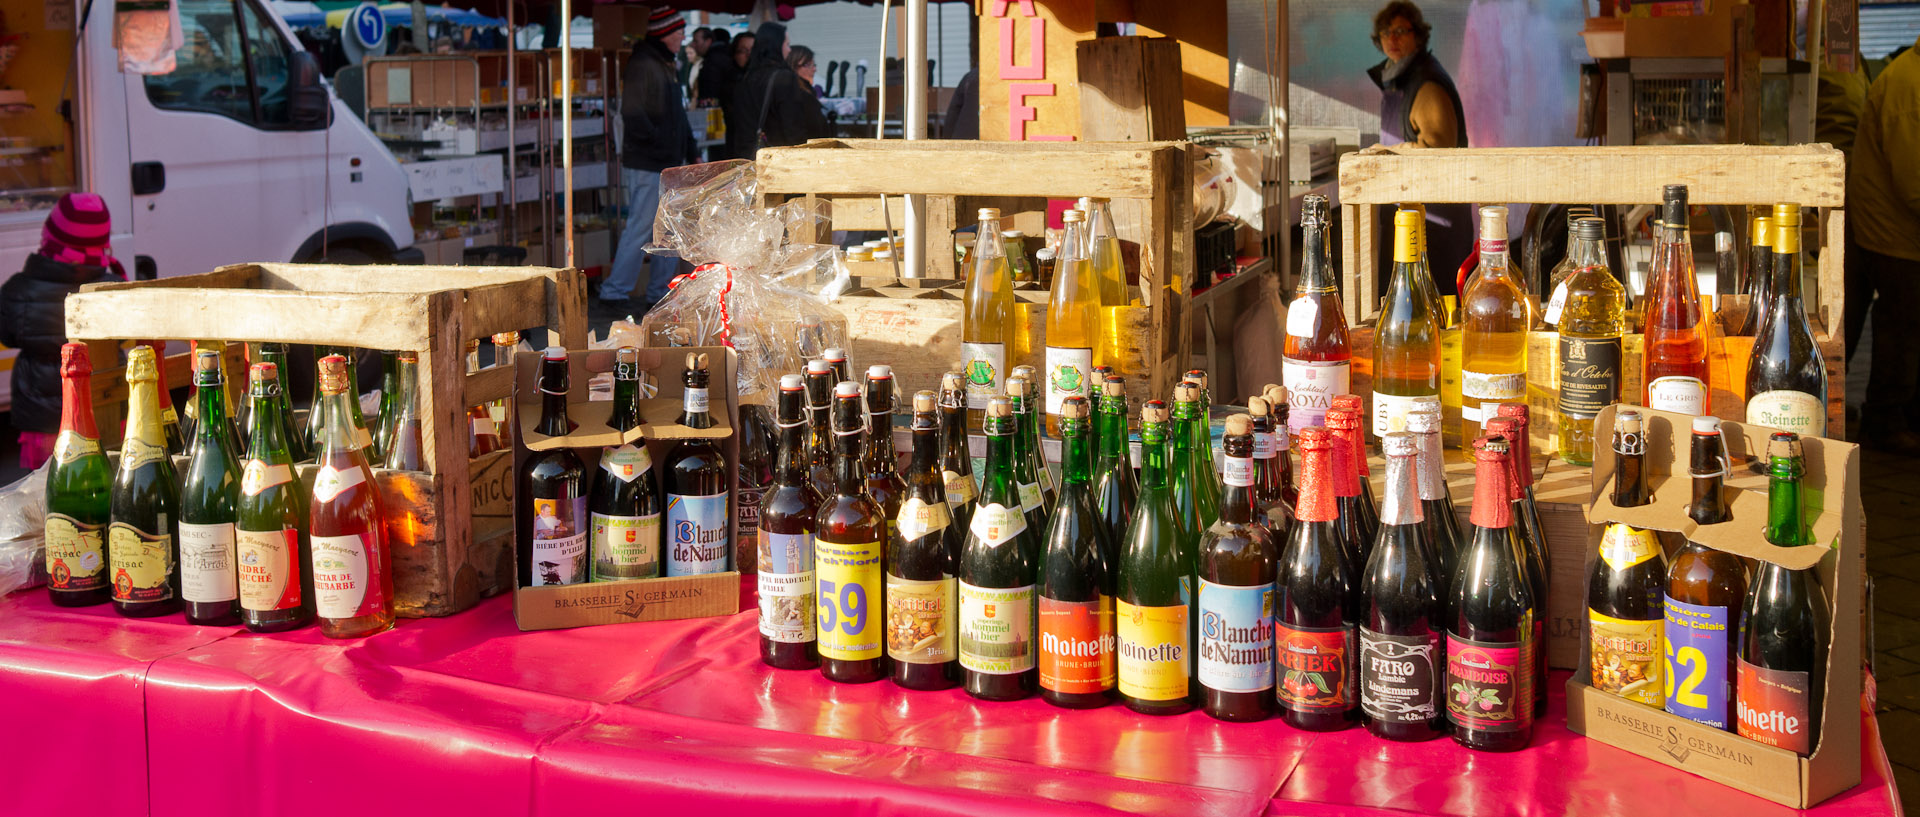 Etal de bouteilles de bière dans le soleil, marché Saint-Pierre, place de la Liberté, à Croix.